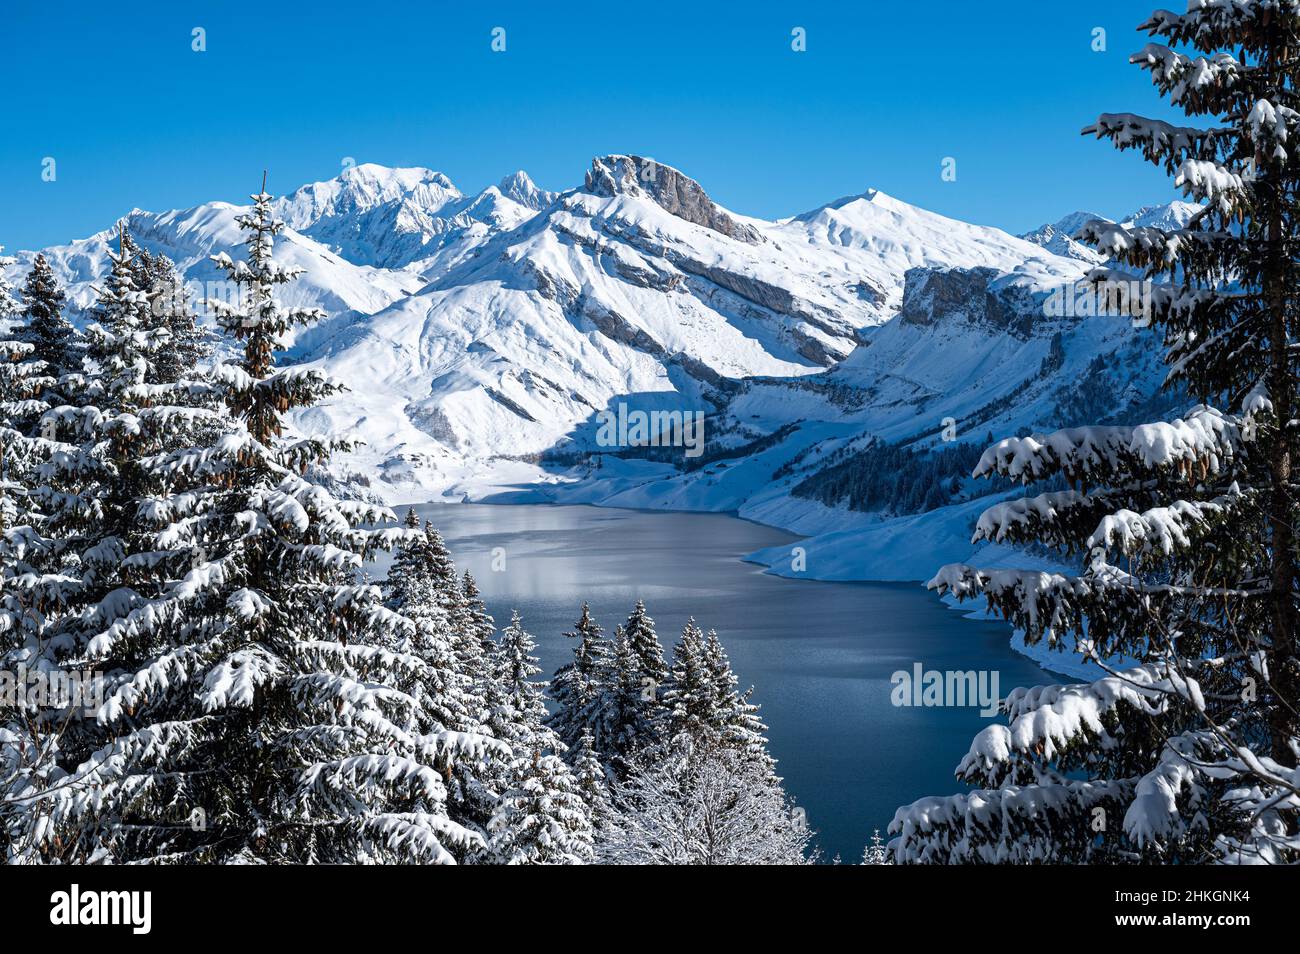 Hermosa vista frontal de una montaña cubierta de nieve, parte de la  cordillera de los Alpes franceses desde un bosque de pinos. Cormet de  Roselend, Saboya, Francia Fotografía de stock - Alamy